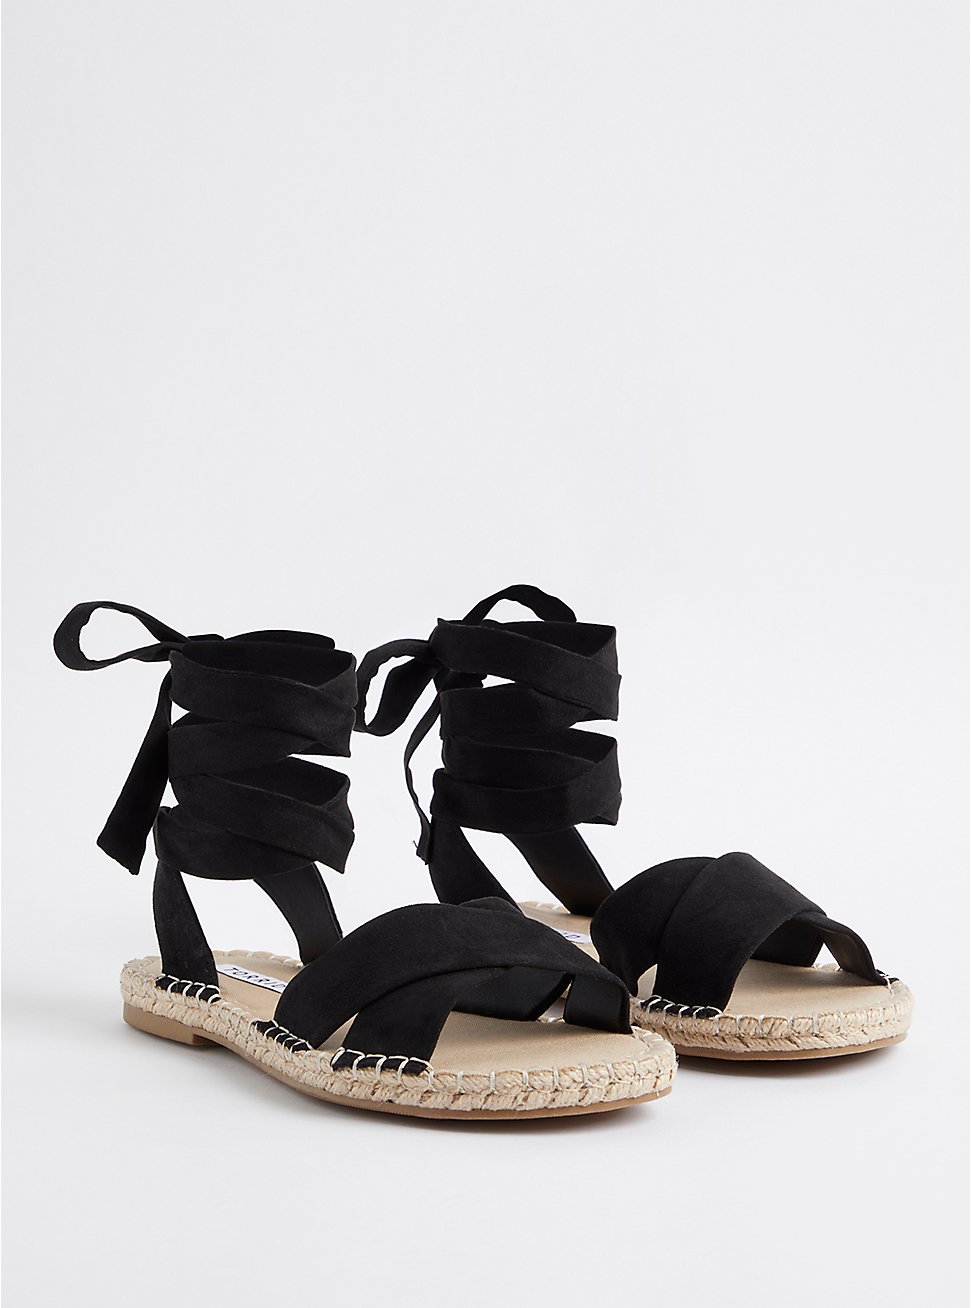 Plus Size Espadrille Sandal - Faux Suede Black (WW), BLACK, hi-res